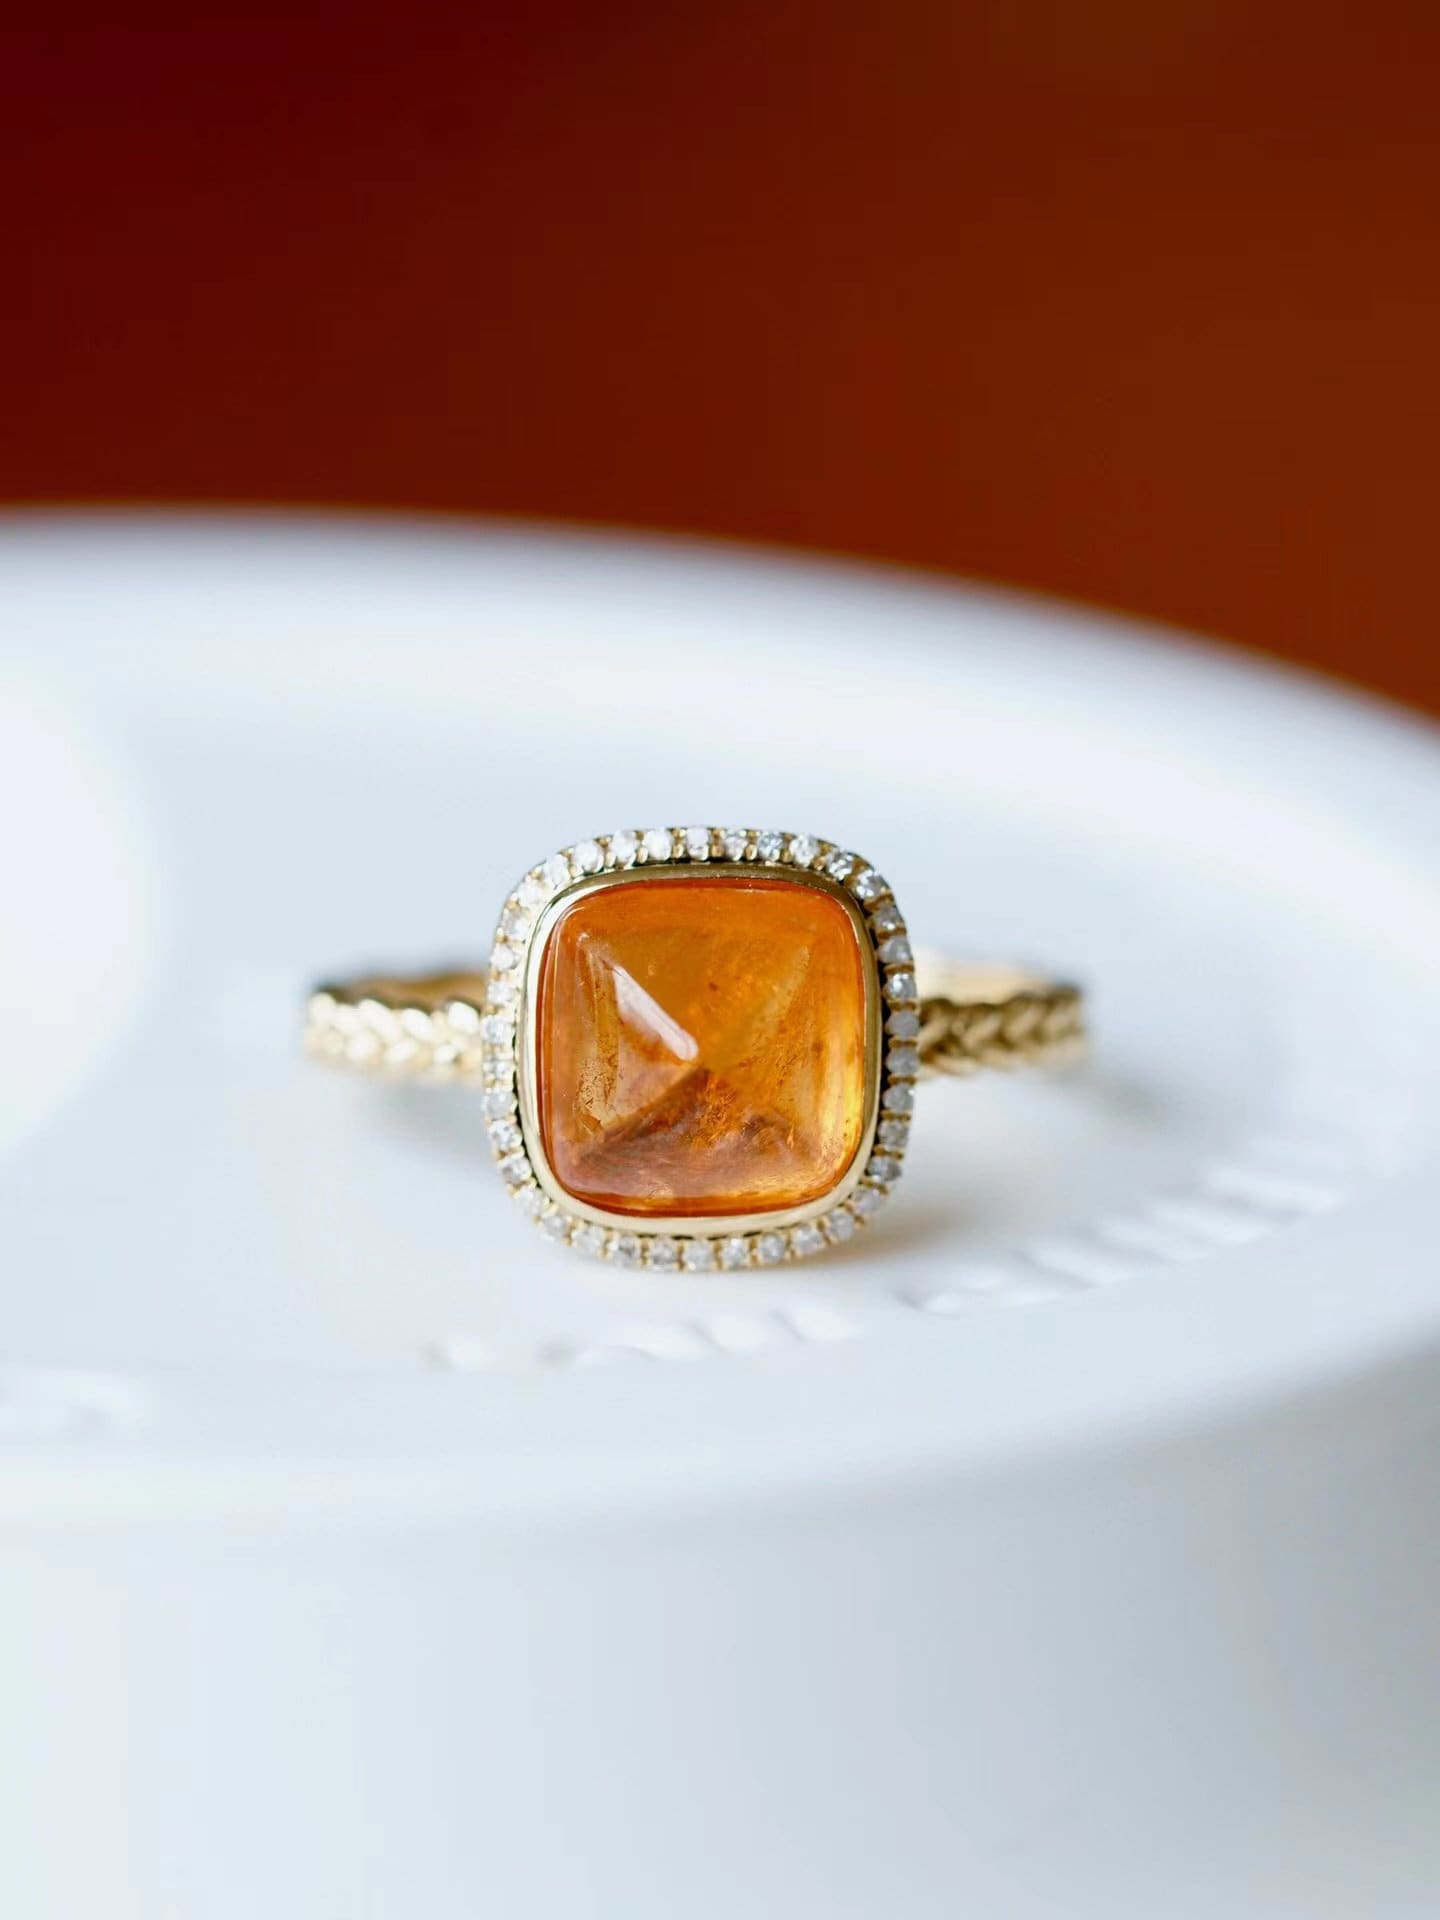 Mandarin Granat Ring Zuckerhut Fanta Orange Halskette in 18K Gold Jubiläumsgeschenk Muttertag Edelstein Damen Edler Schmuck von JMgemsDesign